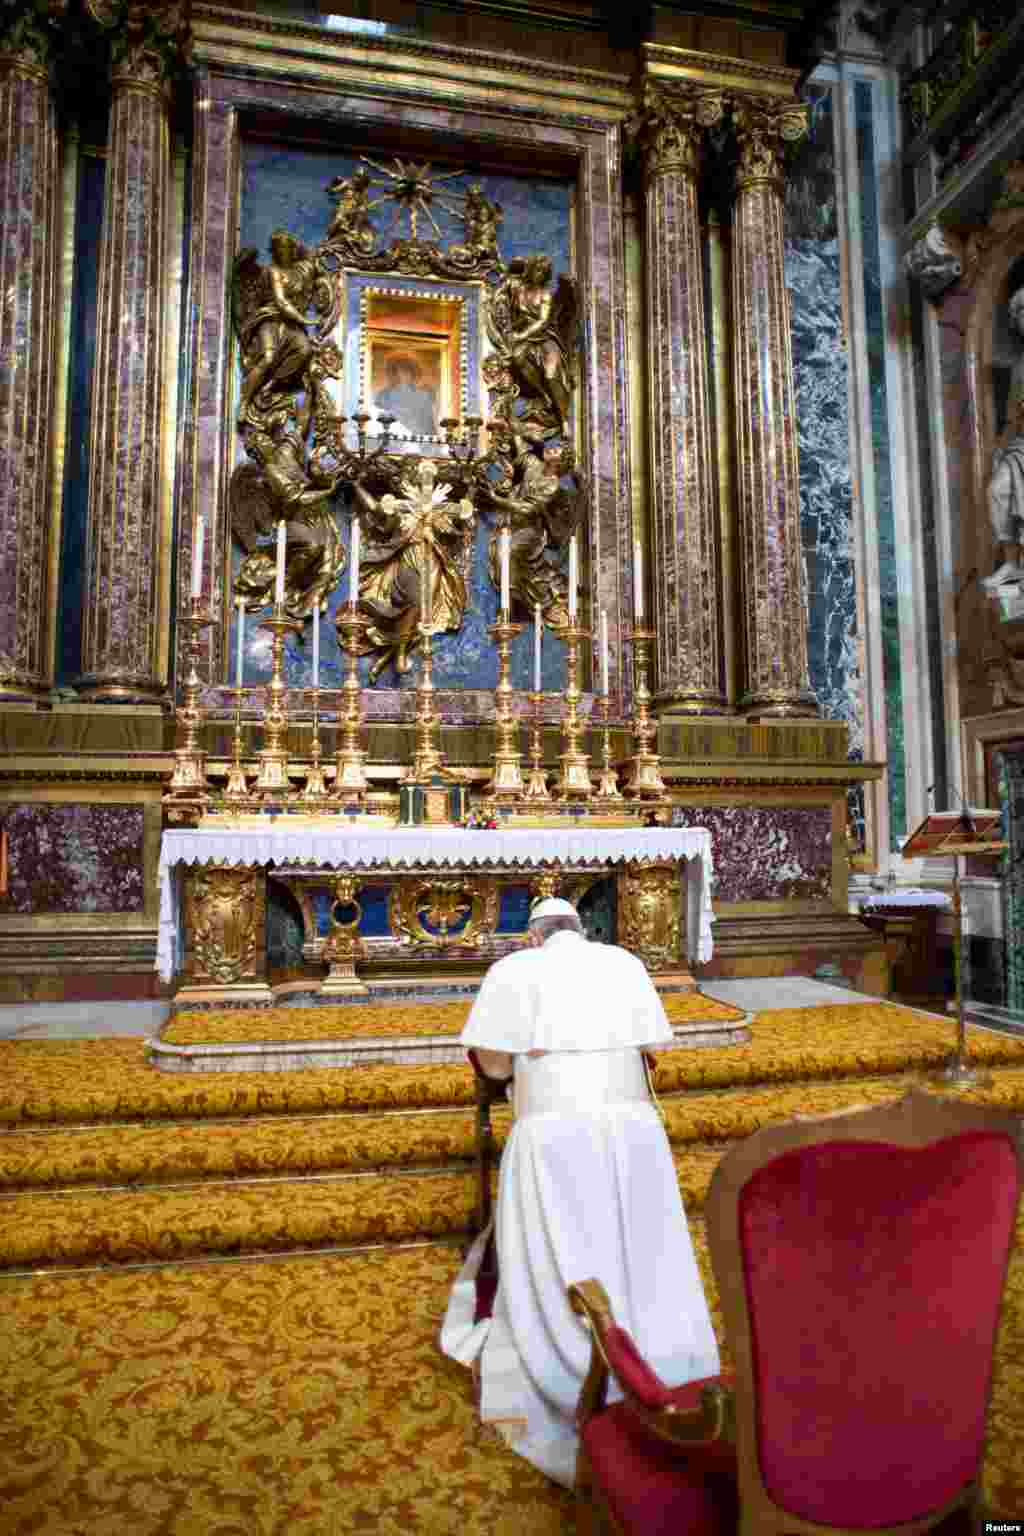 پاپ فرانسیس که به تازگی به مقام پاپ برگزیده شده است، در طی دیدار خصوصی خود از کلیسای سلطنتی سانتا ماریا ماگیواره در رم در برابر مجسمه حضرت مریم دعا می کند. عکس از اوسرواتوره رومانور در رم.&nbsp; ١٤ مارس سال ٢٠١٣